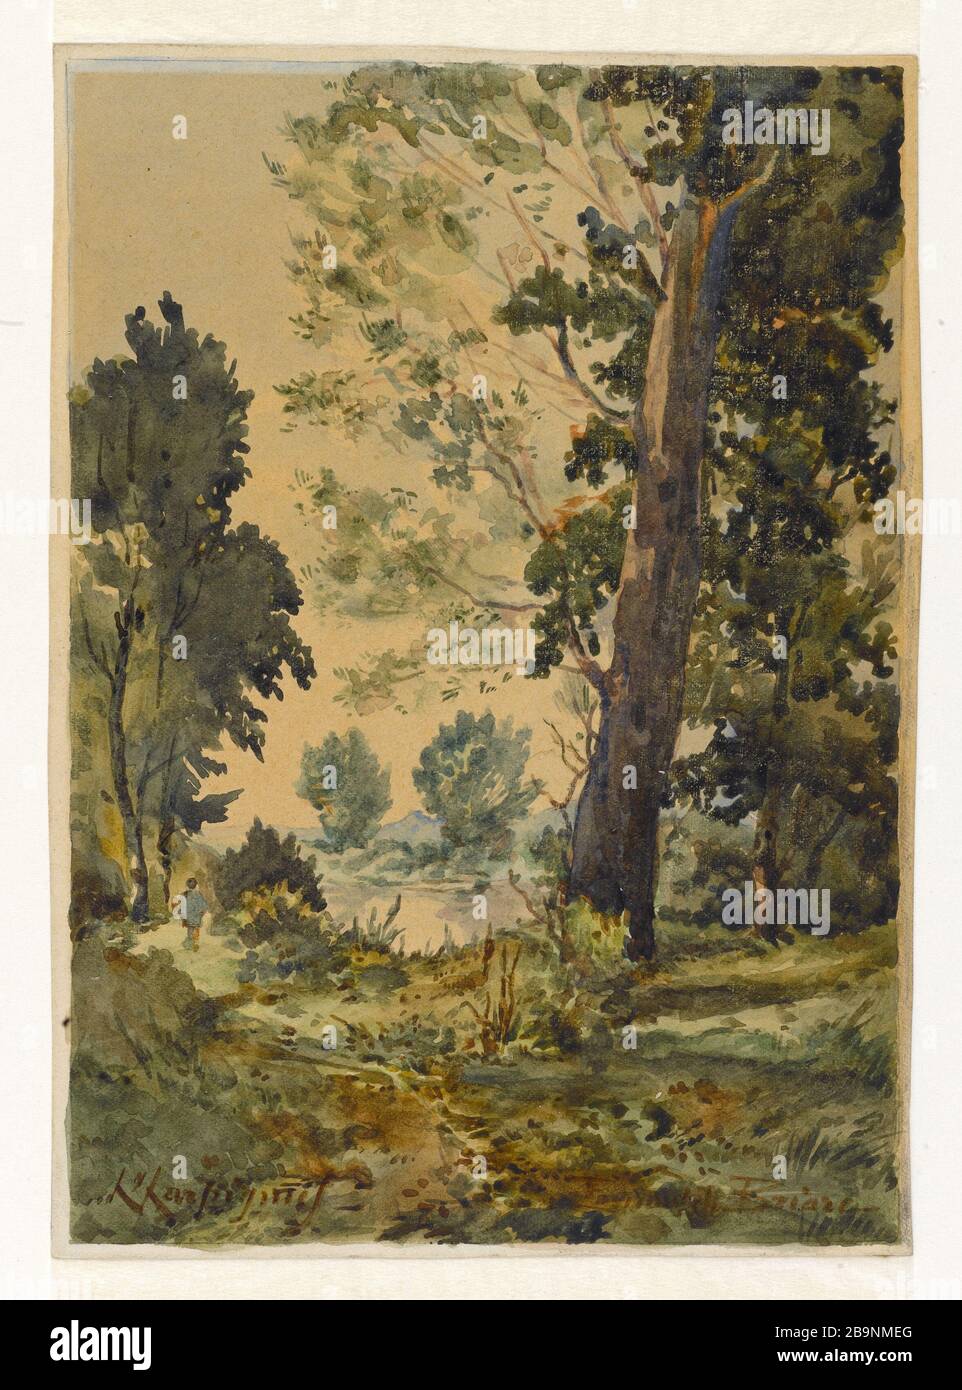 LANDSCAPE Henri Joseph Harpignies (1819-1916). 'Paysage'. Aquarelle sur papier, XIXème siècle. Musée des Beaux-Arts de la Ville de Paris, Petit Palais. Stock Photo